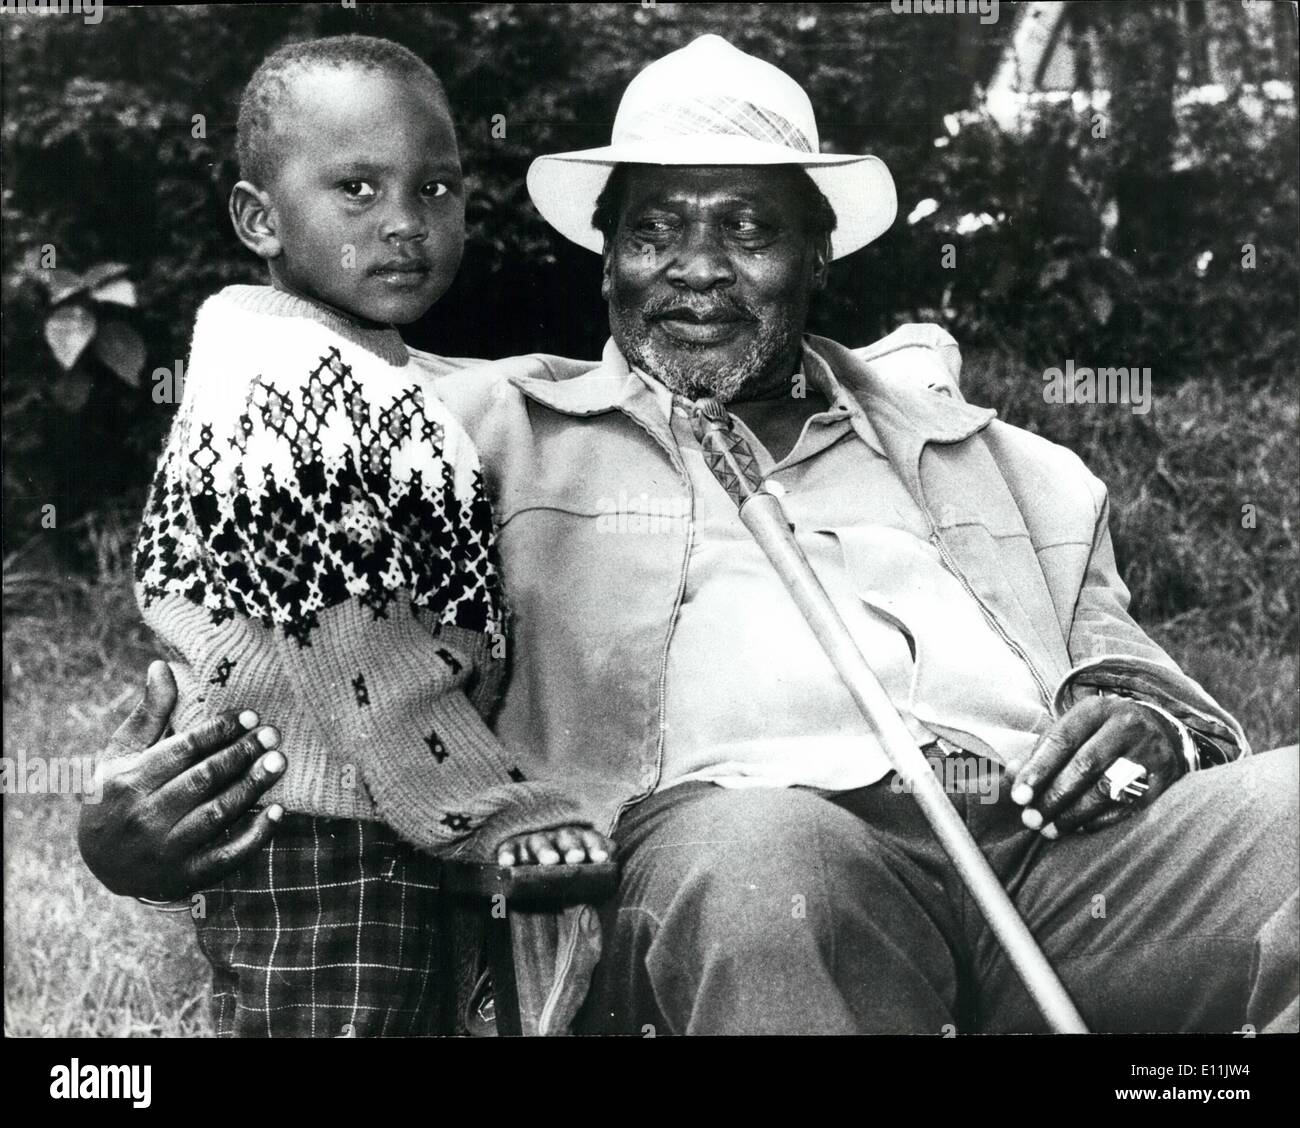 8. August 1978 - Präsident Kenyatta Is Dead: Präsident Kenyatta Kenias heute starb in seinem Schlaf an den Indischen Ozean Hafen von Mombasa, Kenia-Radio gab. Der Präsident war in seinen späten 80er Jahren. Foto zeigt mit seinem Sohn Uhuru Kenyatta Präsident. Stockfoto